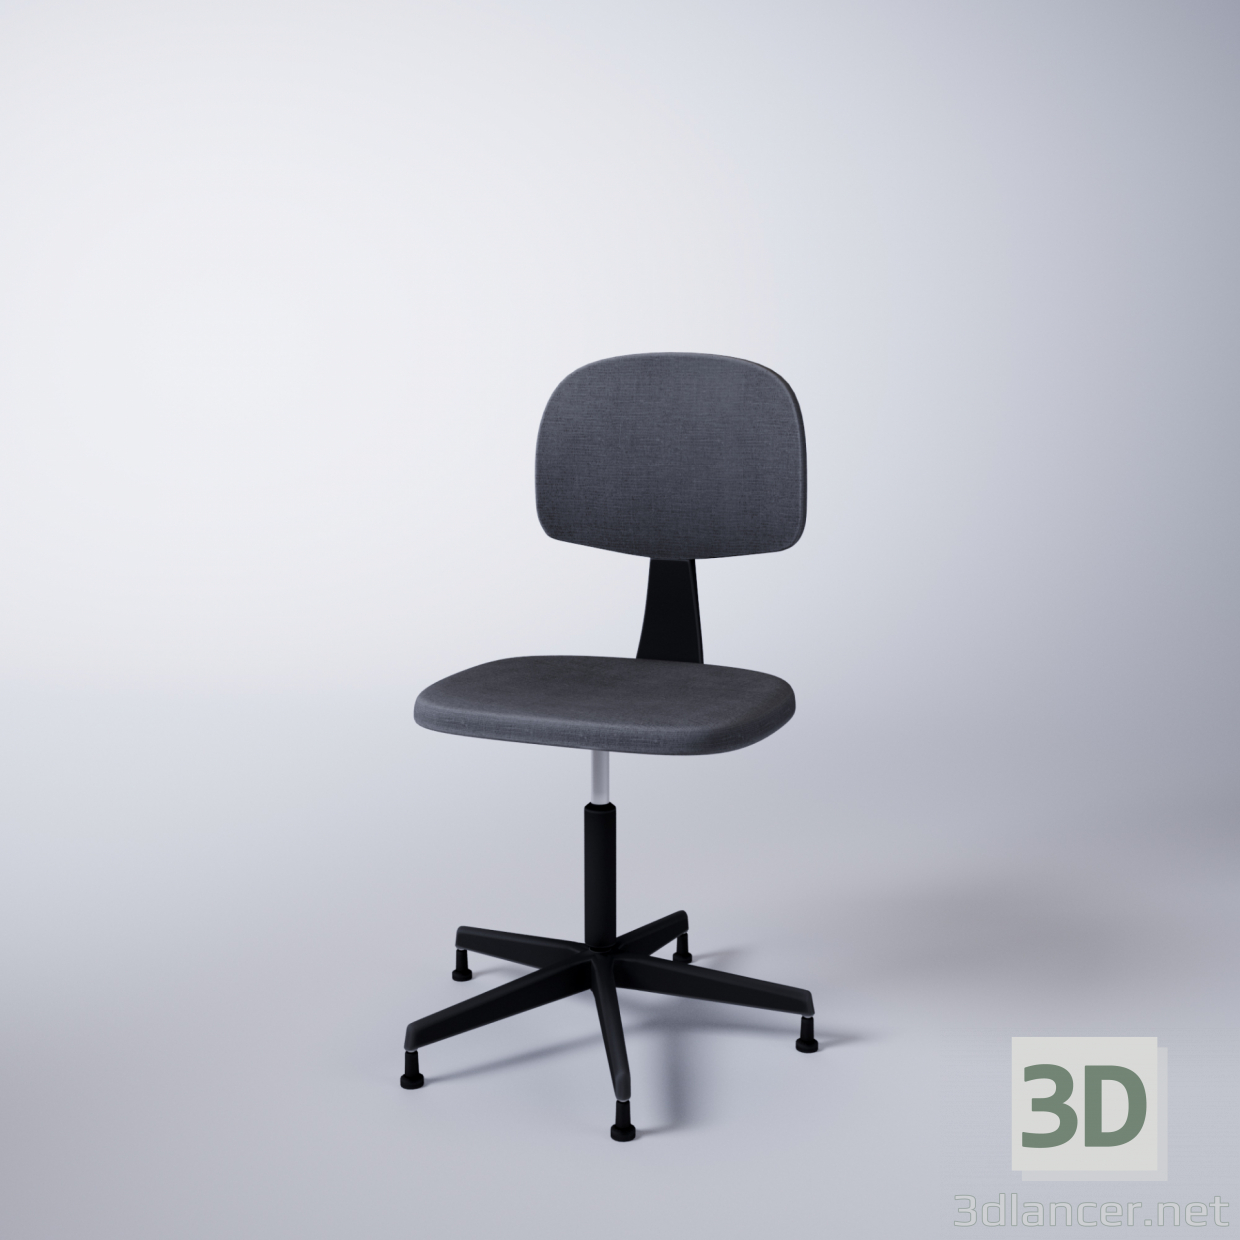 Silla de la computadora 3D modelo Compro - render